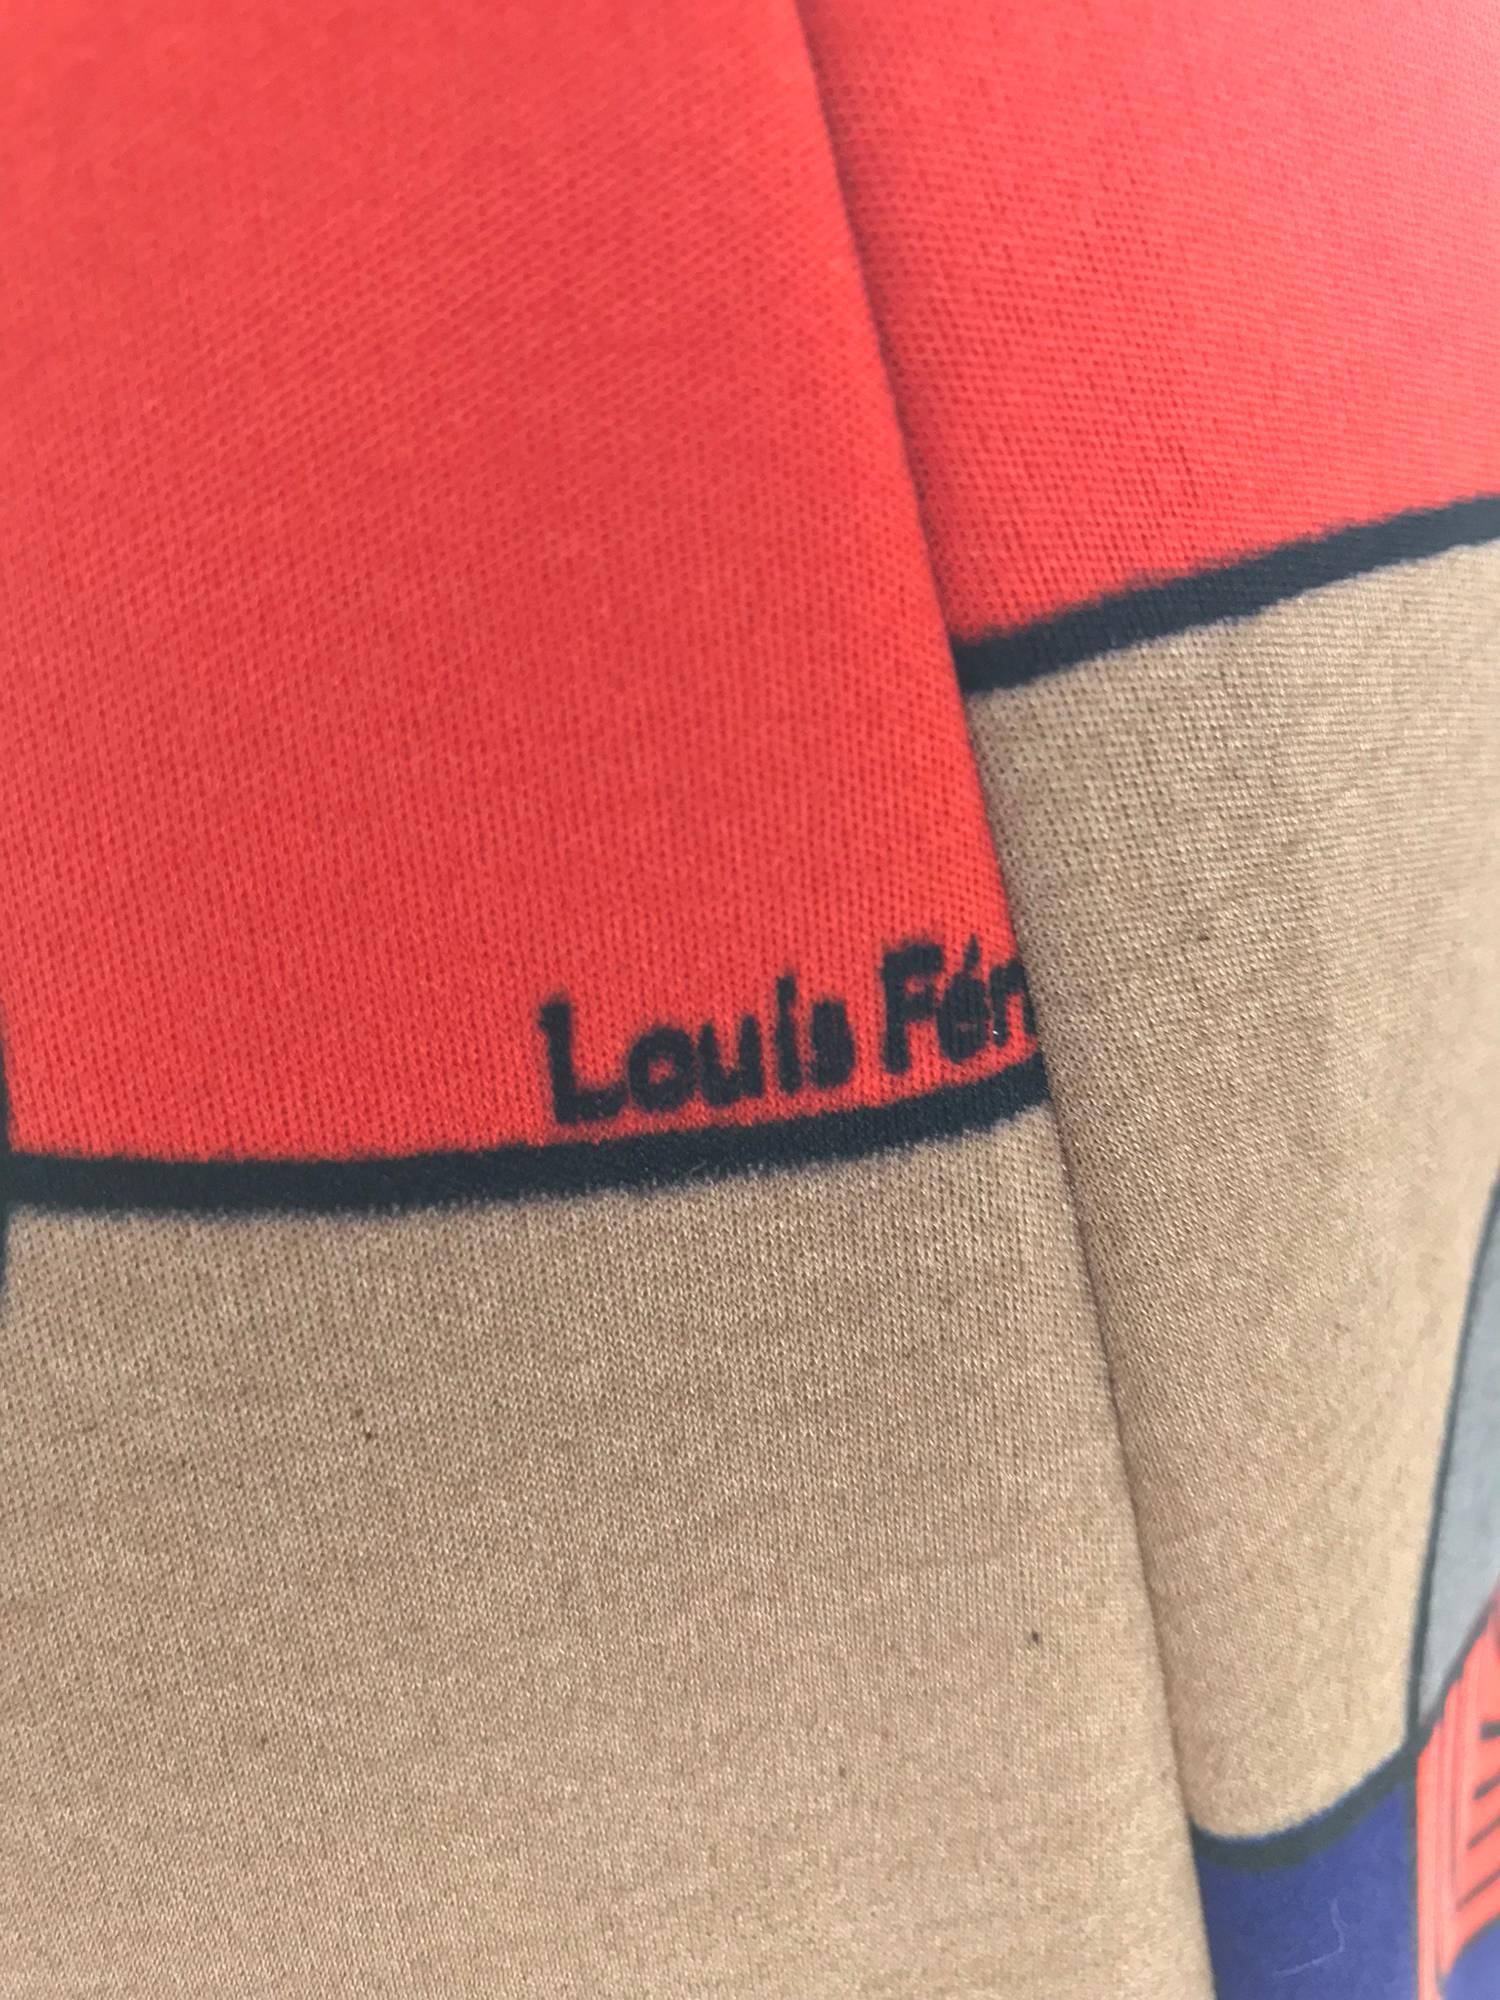 Louis Feraud Op Art Mod print jersey dress 1960s  6